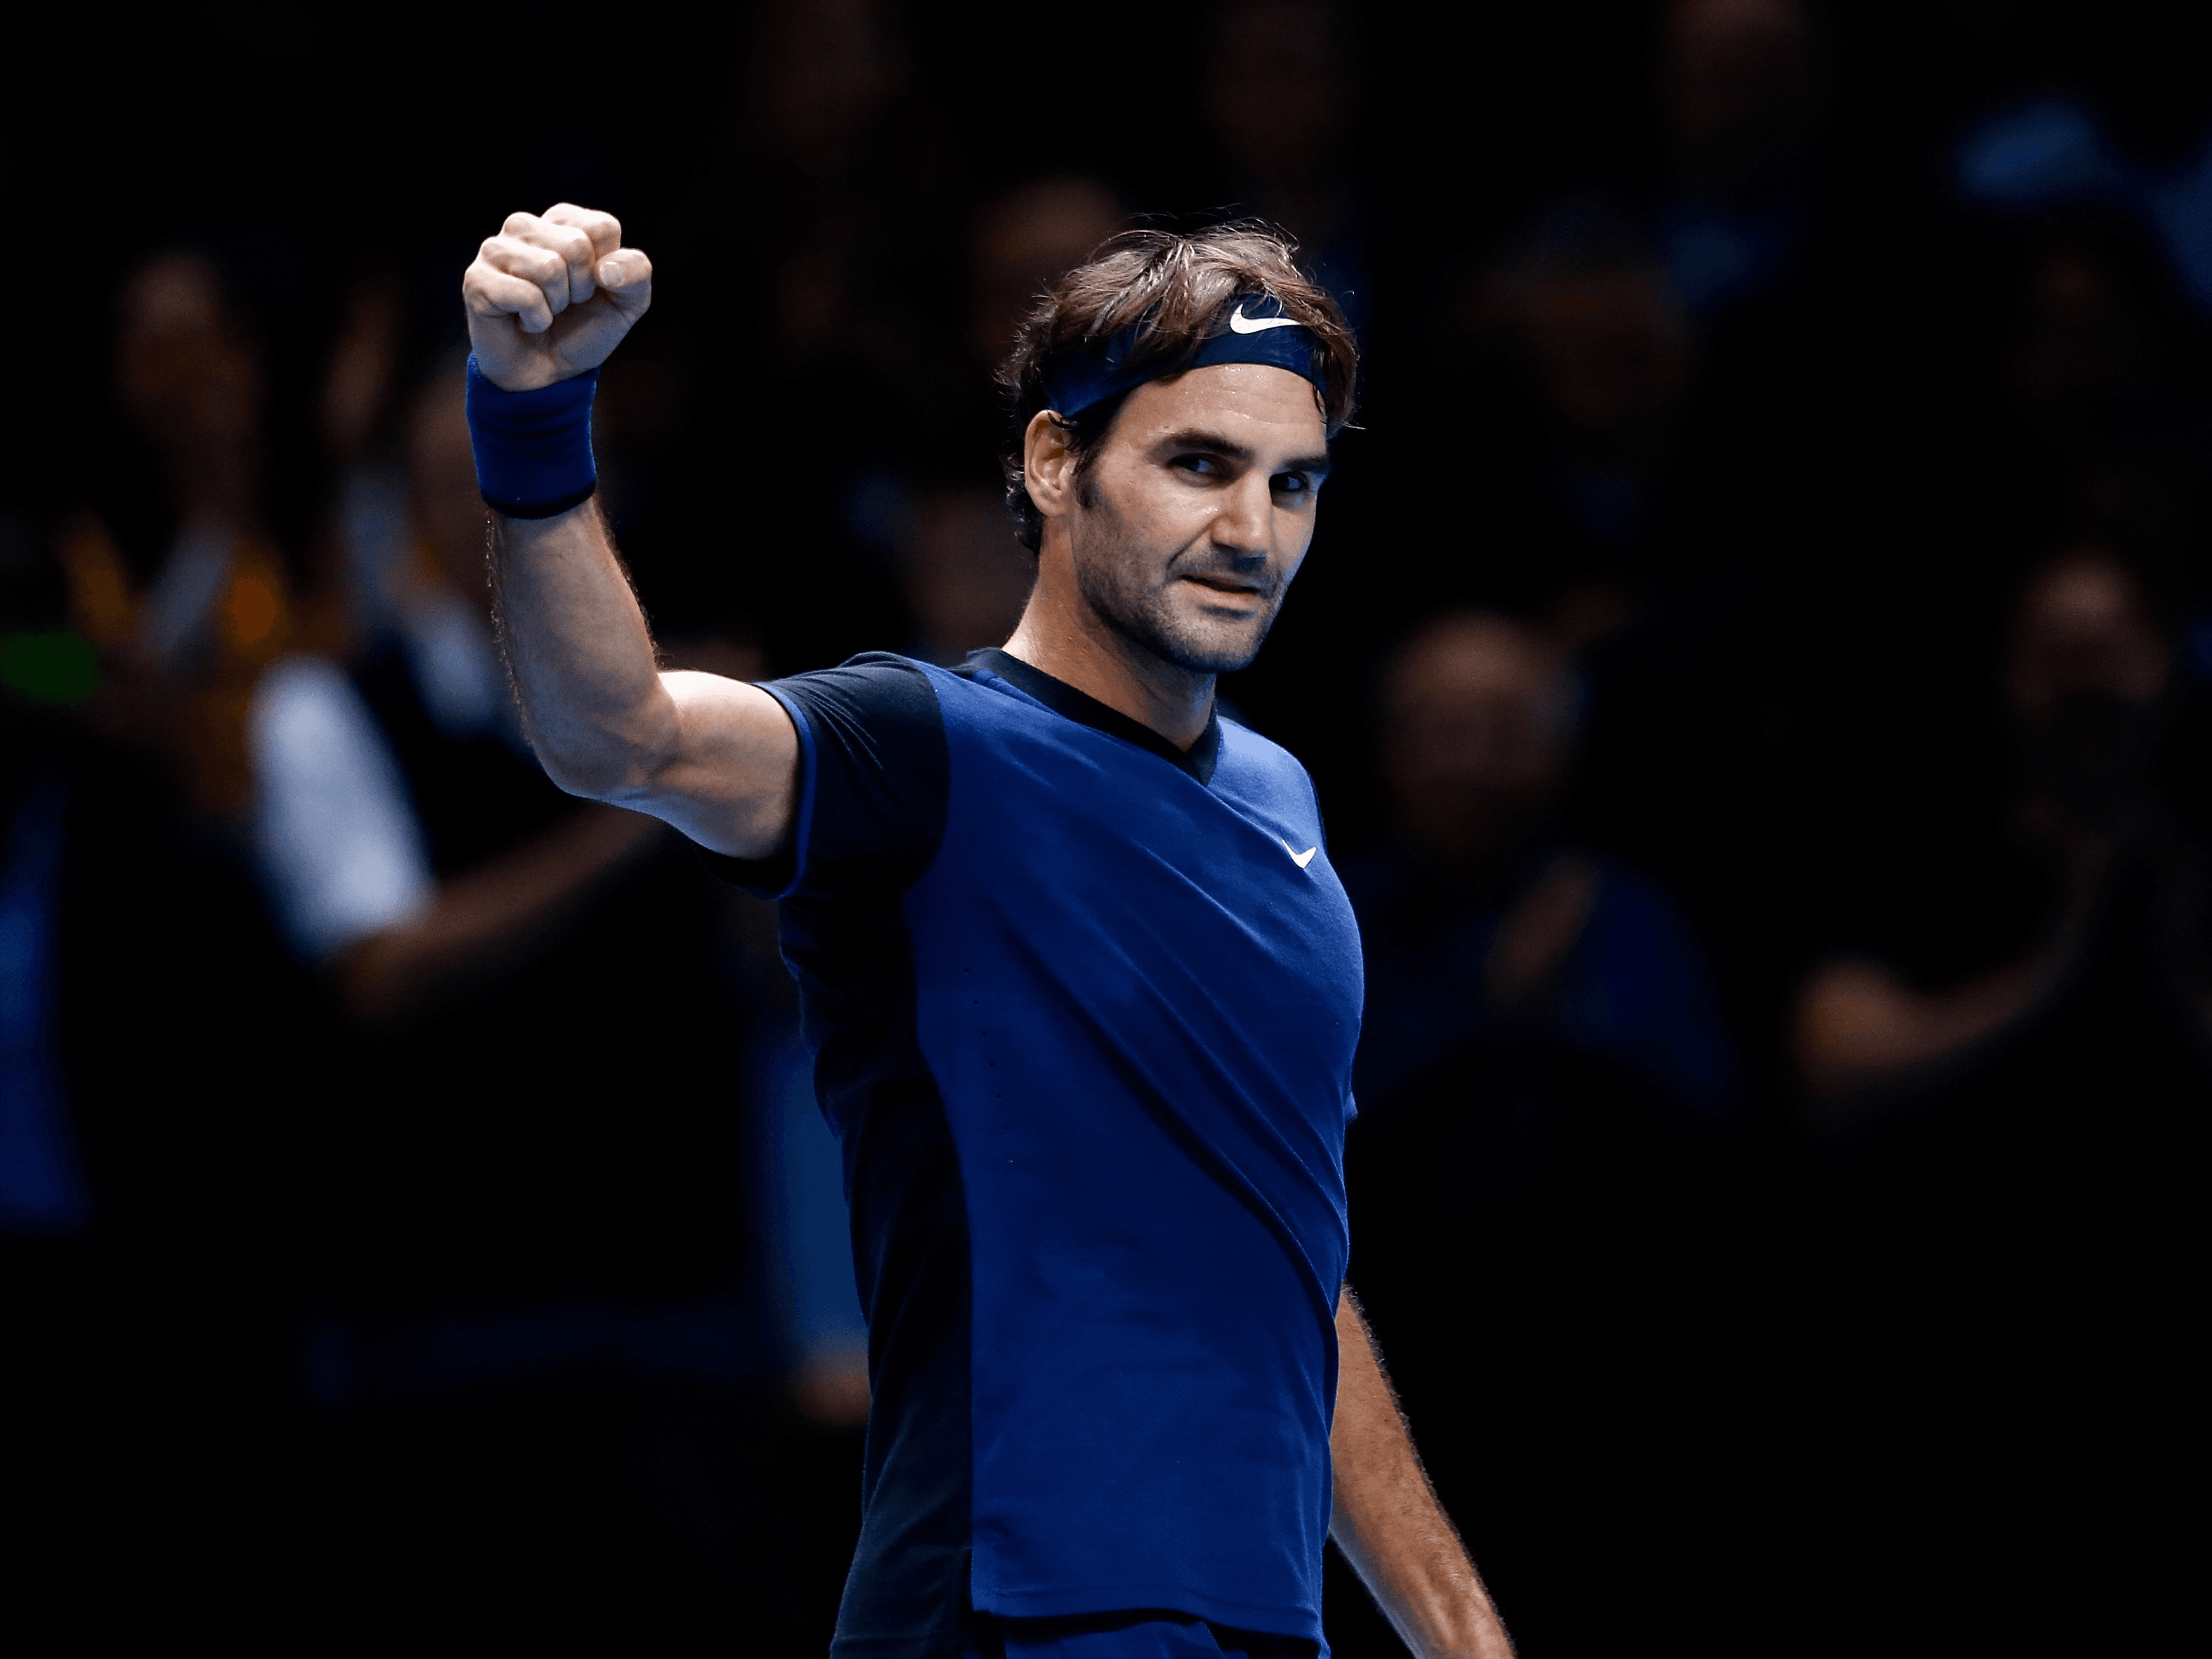 Rodžer Federer plasmanom u finale ATP turnira u Štutgartu skinuo Nadala s prvog mjesta